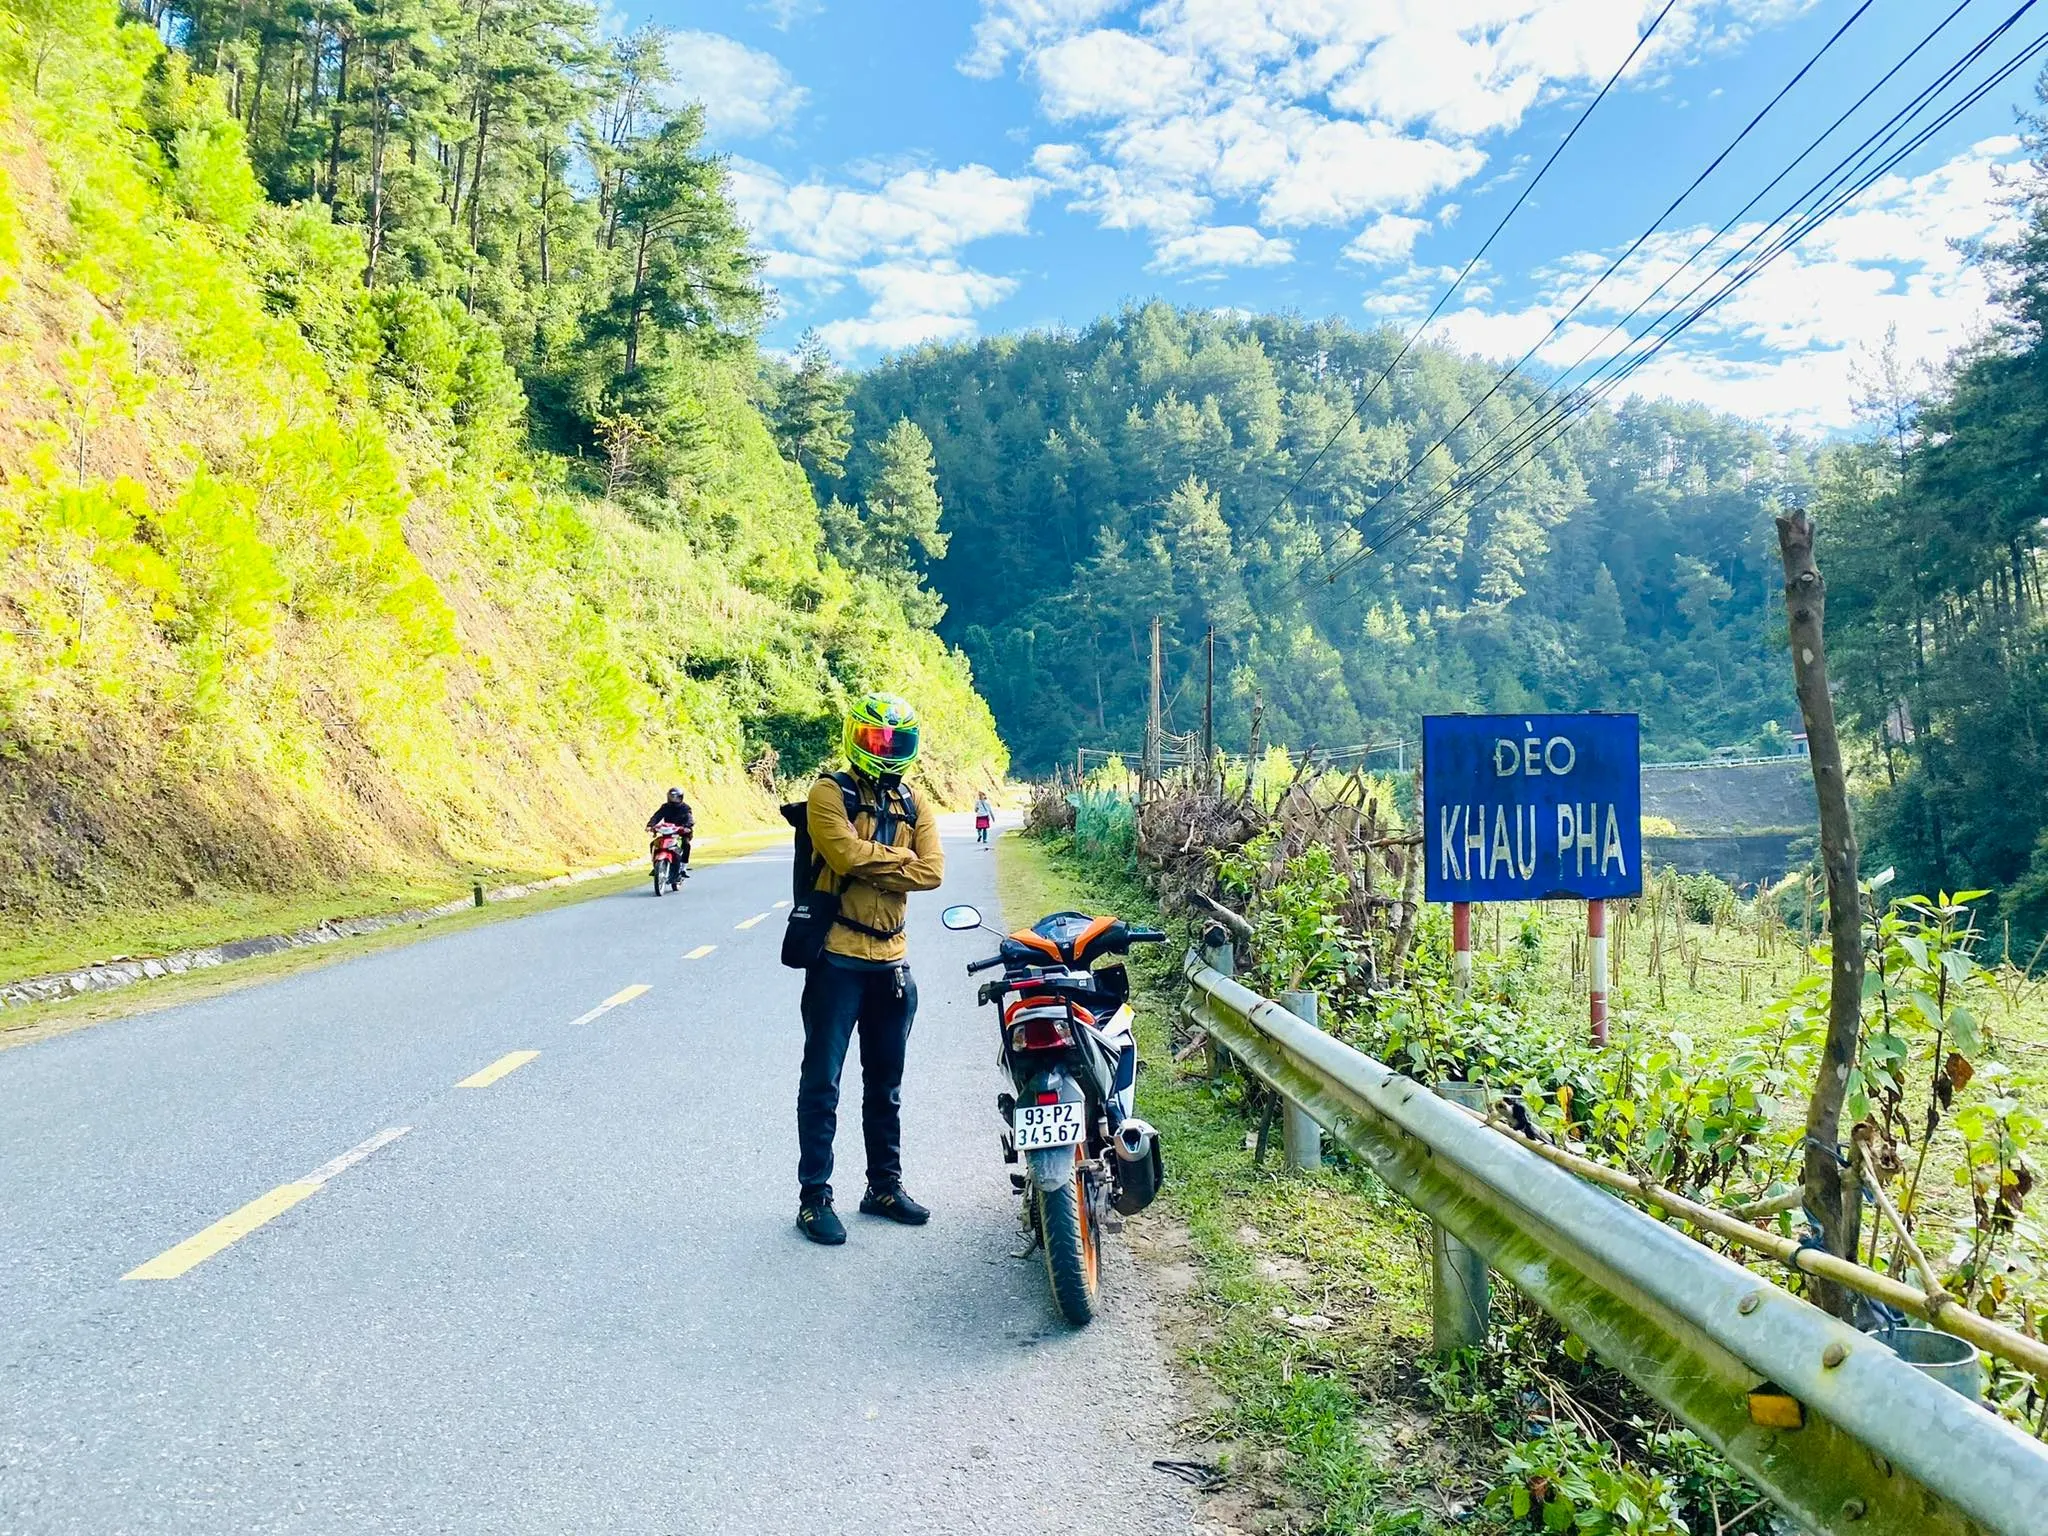 Di chuyển bằng xe máy bạn có thể dừng lại check-in nhiều cảnh đẹp trên đường đến Lai Châu